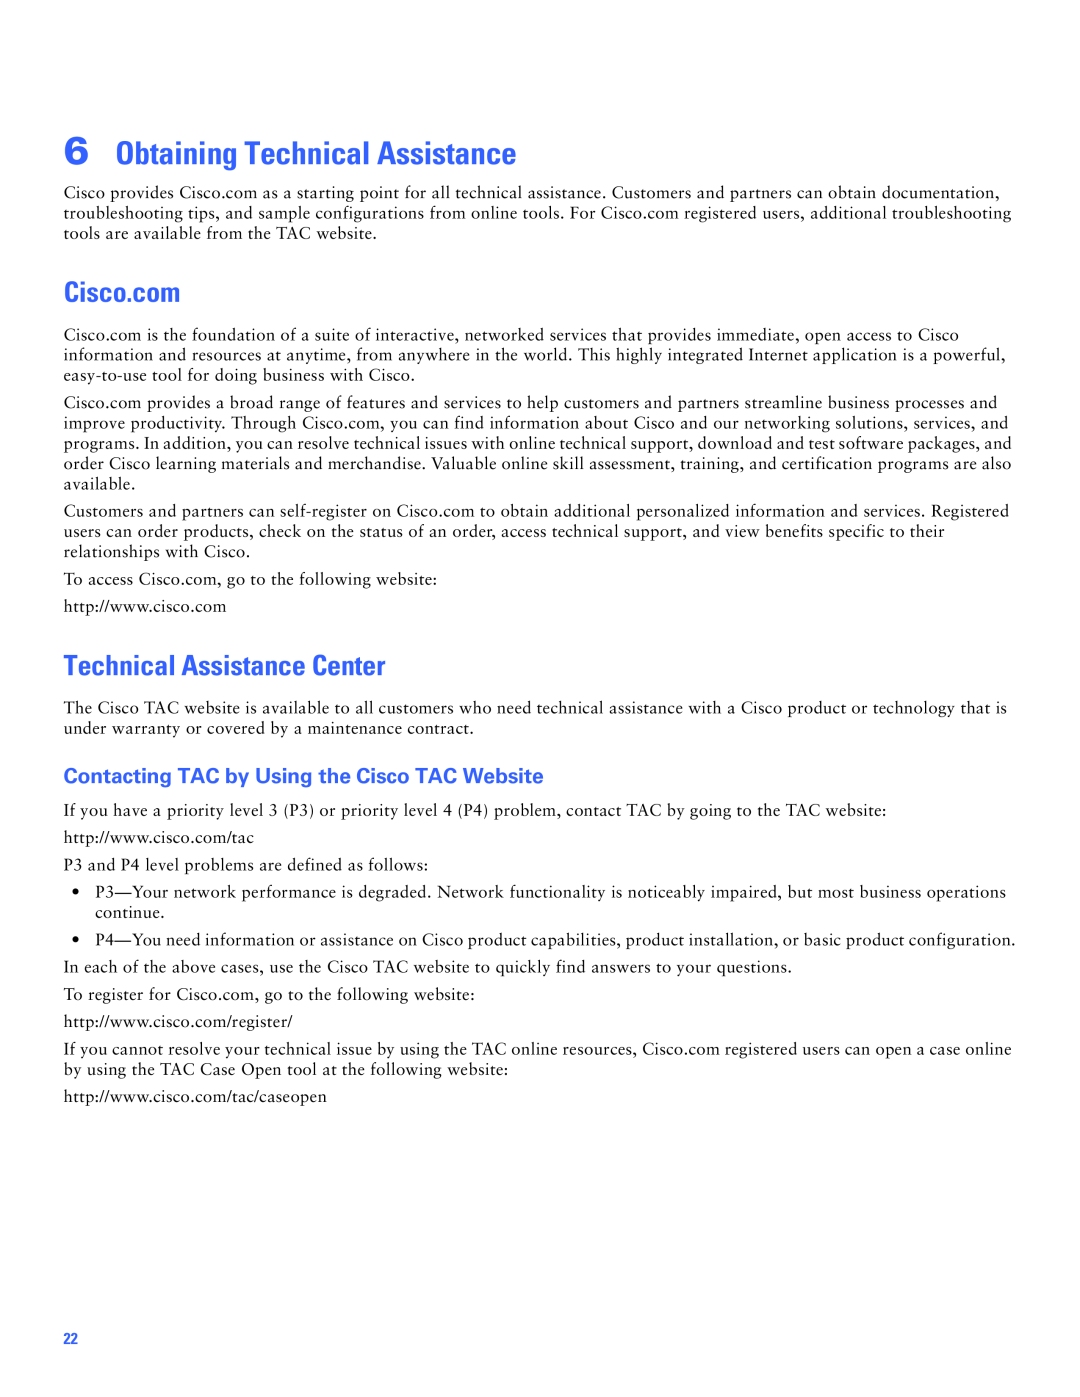 Cisco Systems Cisco AS5300 manual Obtaining Technical Assistance, Cisco.com, Technical Assistance Center 